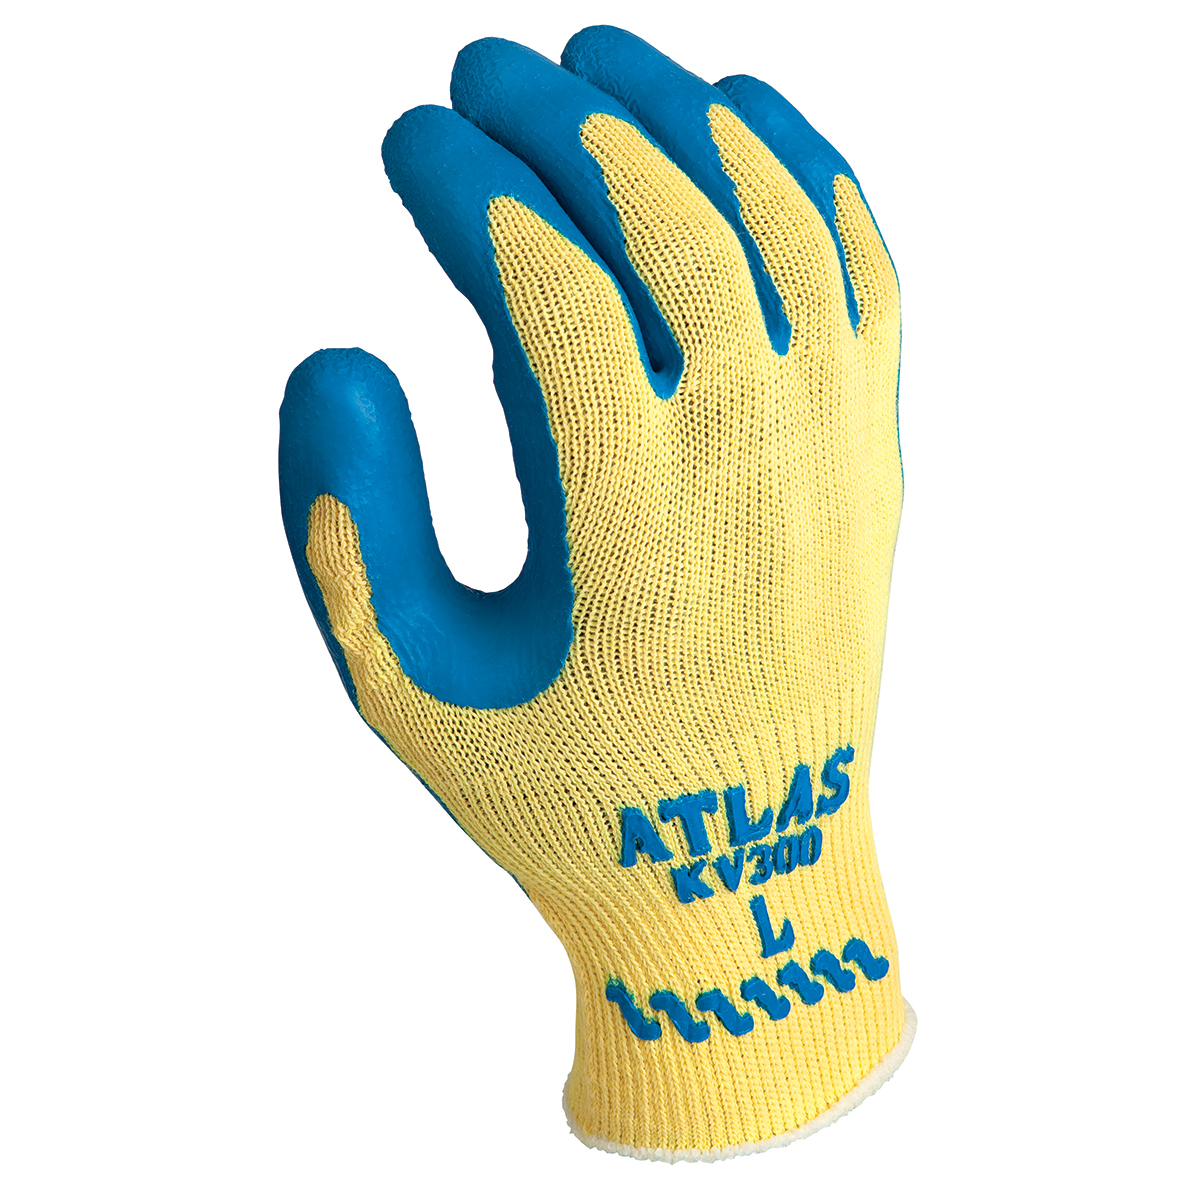 SHOWA® ATLAS® KV300 10 Gauge DuPont™ Kevlar® Cut Resistant Gloves With Rubber Coating